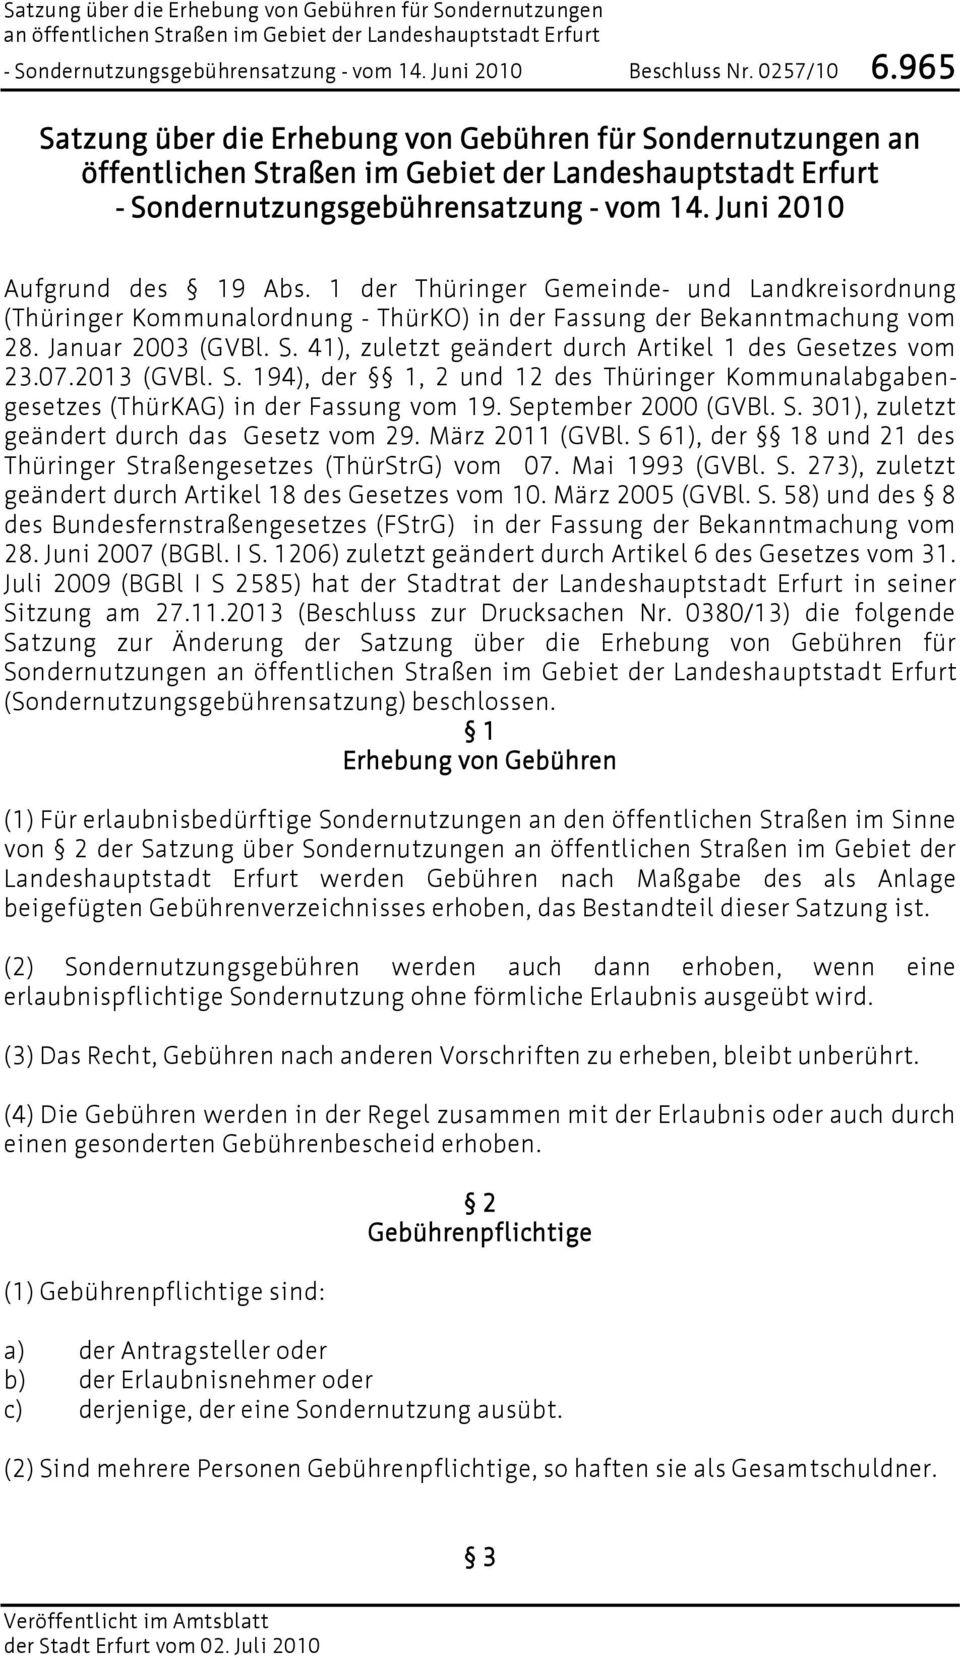 41), zuletzt geändert durch Artikel 1 des Gesetzes vom 23.07.2013 (GVBl. S. 194), der 1, 2 und 12 des Thüringer Kommunalabgabengesetzes (ThürKAG) in der Fassung vom 19. September 2000 (GVBl. S. 301), zuletzt geändert durch das Gesetz vom 29.